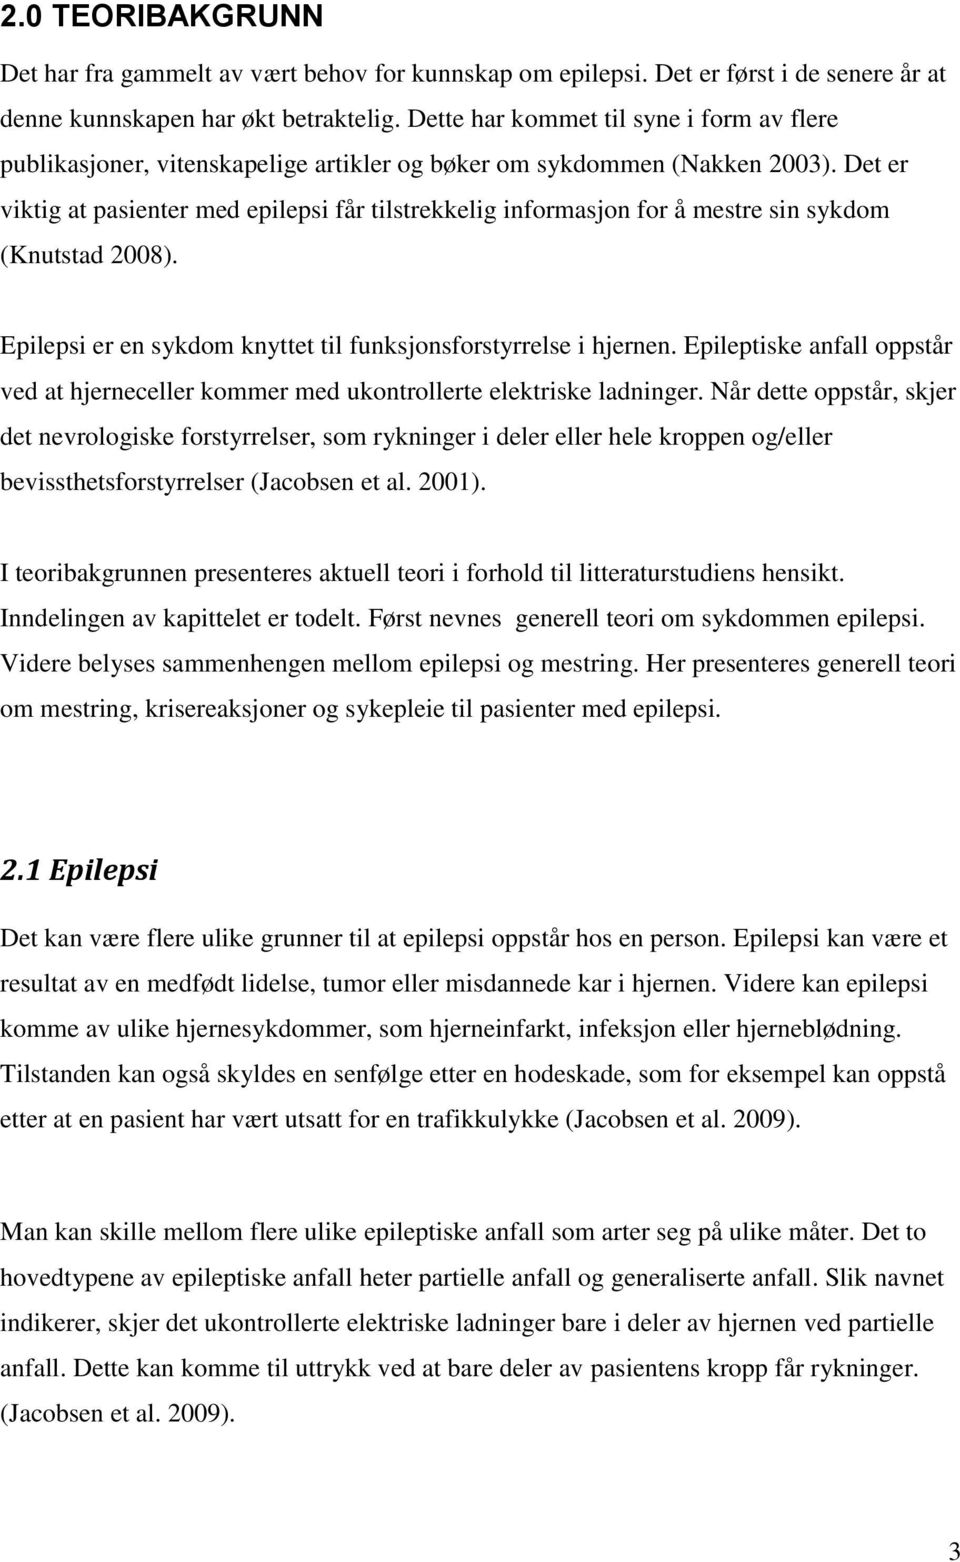 Det er viktig at pasienter med epilepsi får tilstrekkelig informasjon for å mestre sin sykdom (Knutstad 28). Epilepsi er en sykdom knyttet til funksjonsforstyrrelse i hjernen.